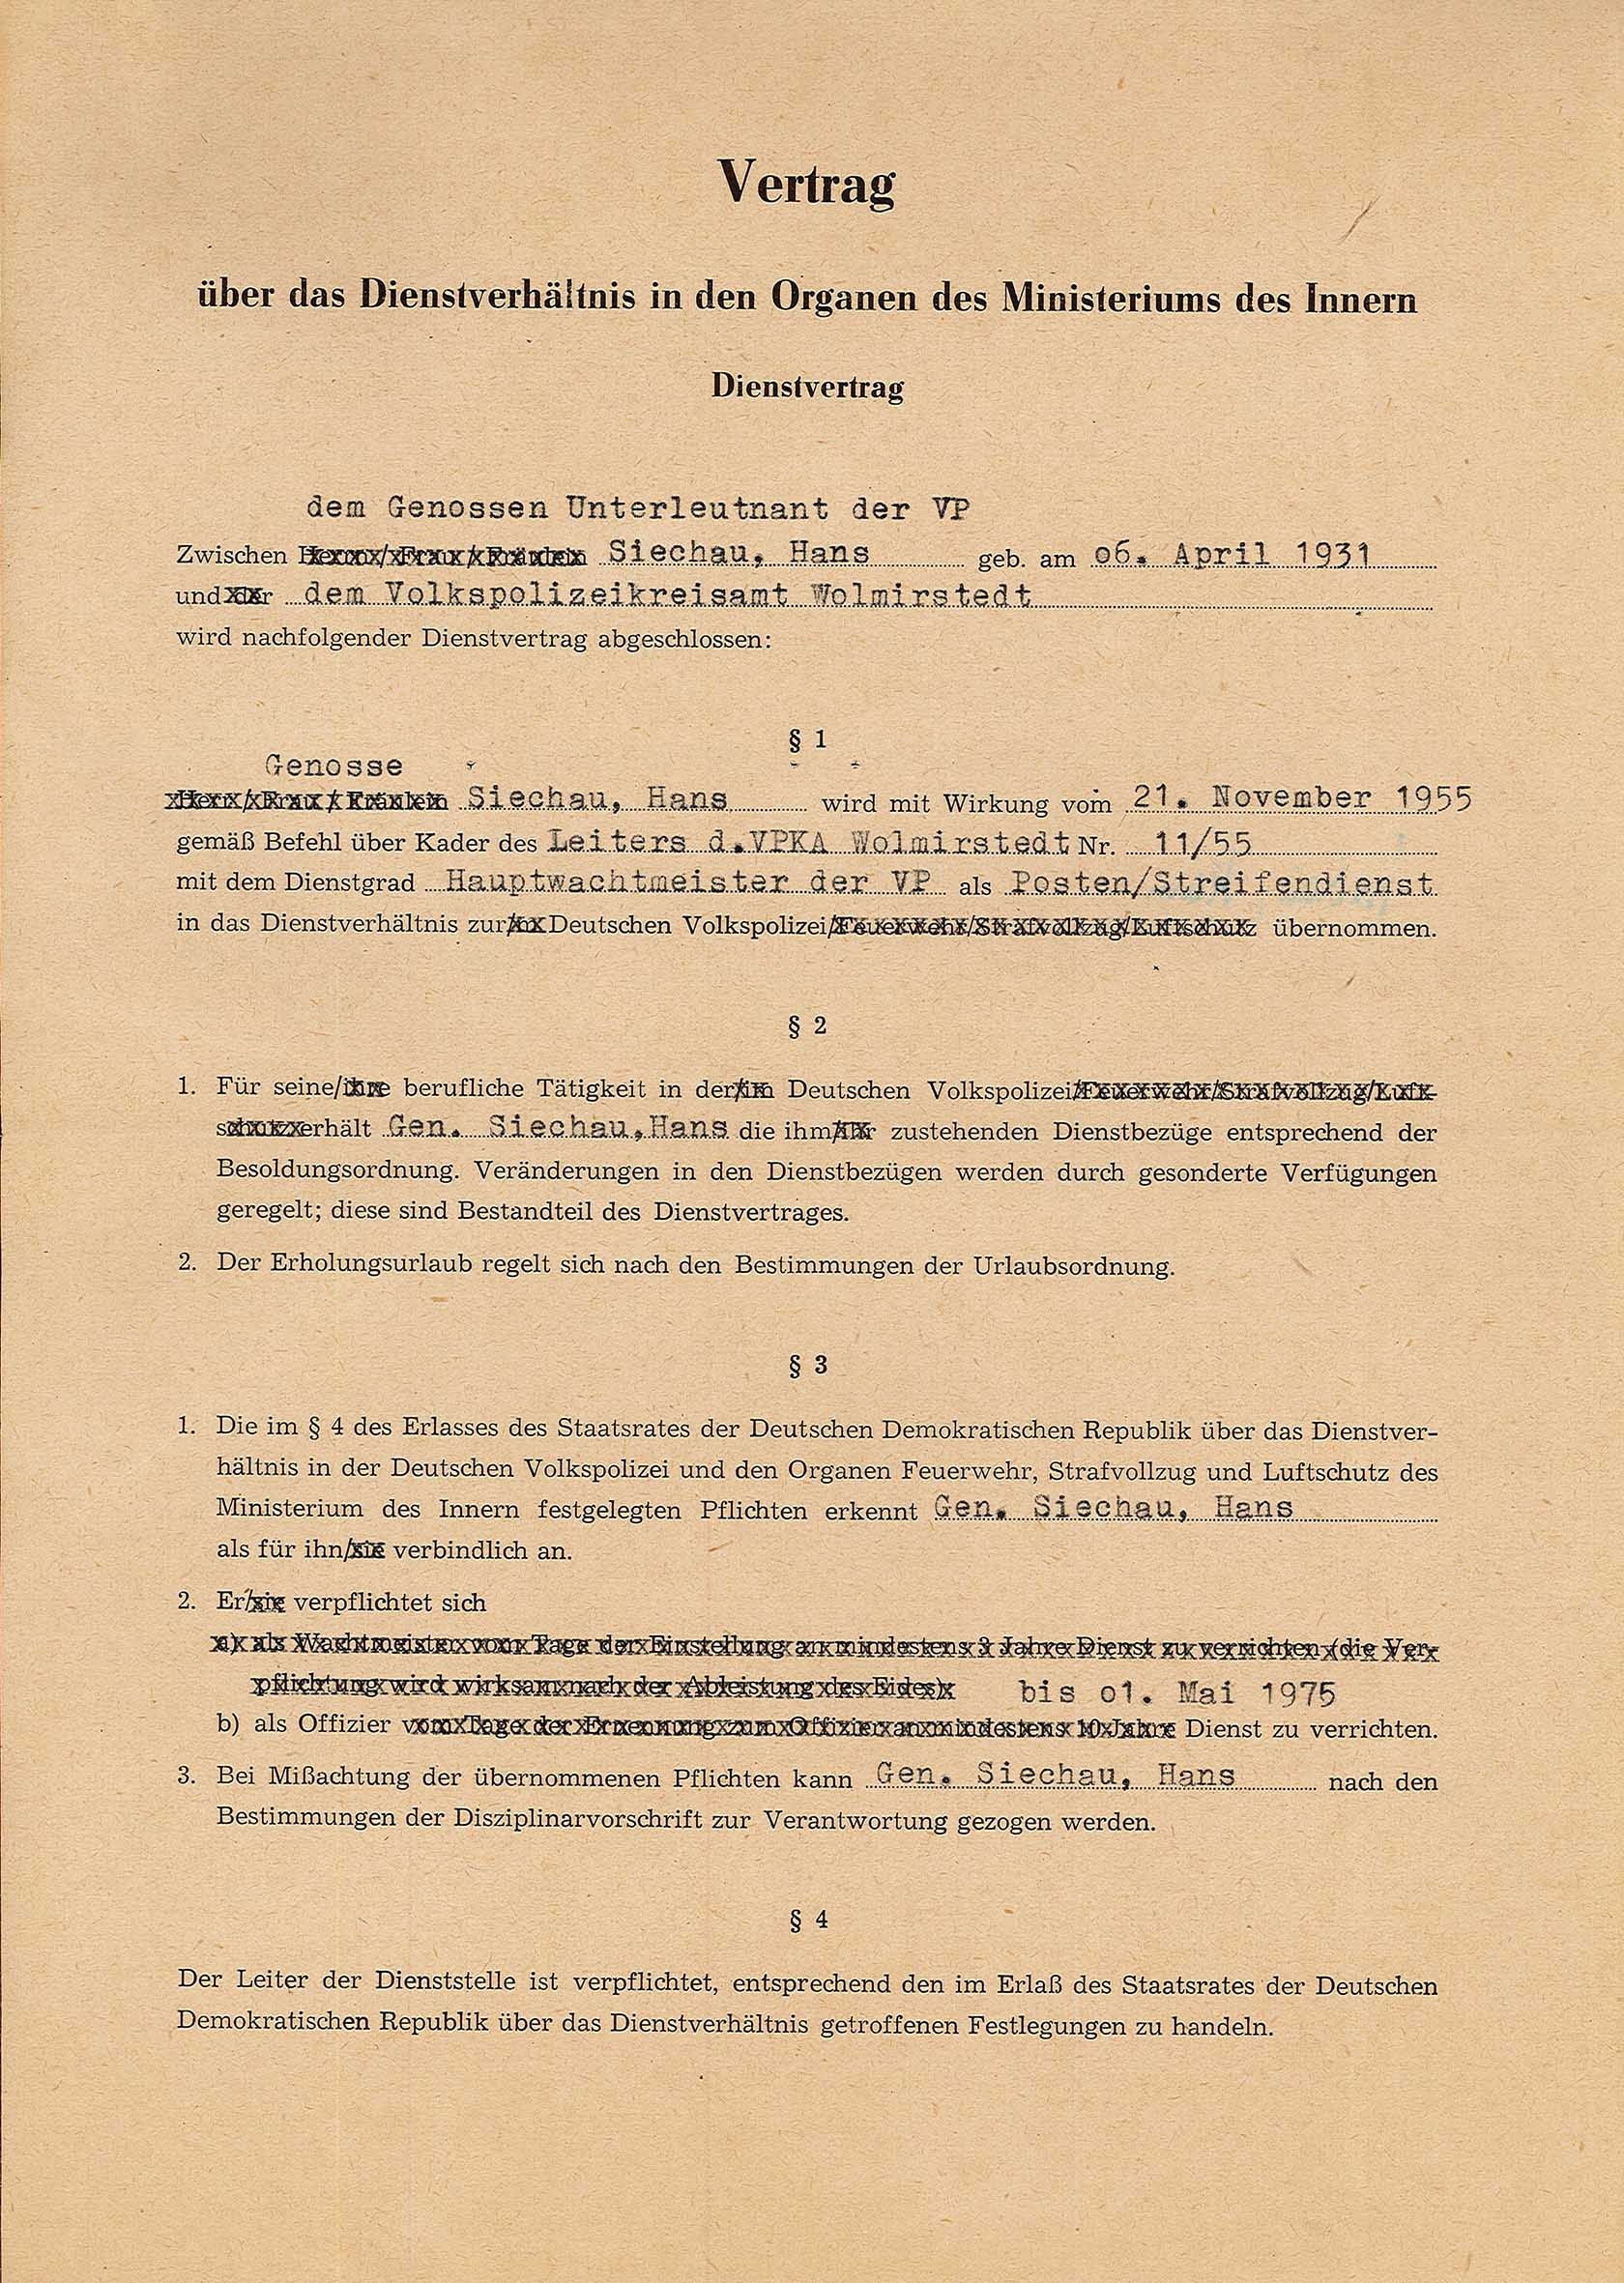 Dienstvertrag von Hans Siechau mit dem Innenministerium der DDR (Museum Wolmirstedt RR-F)